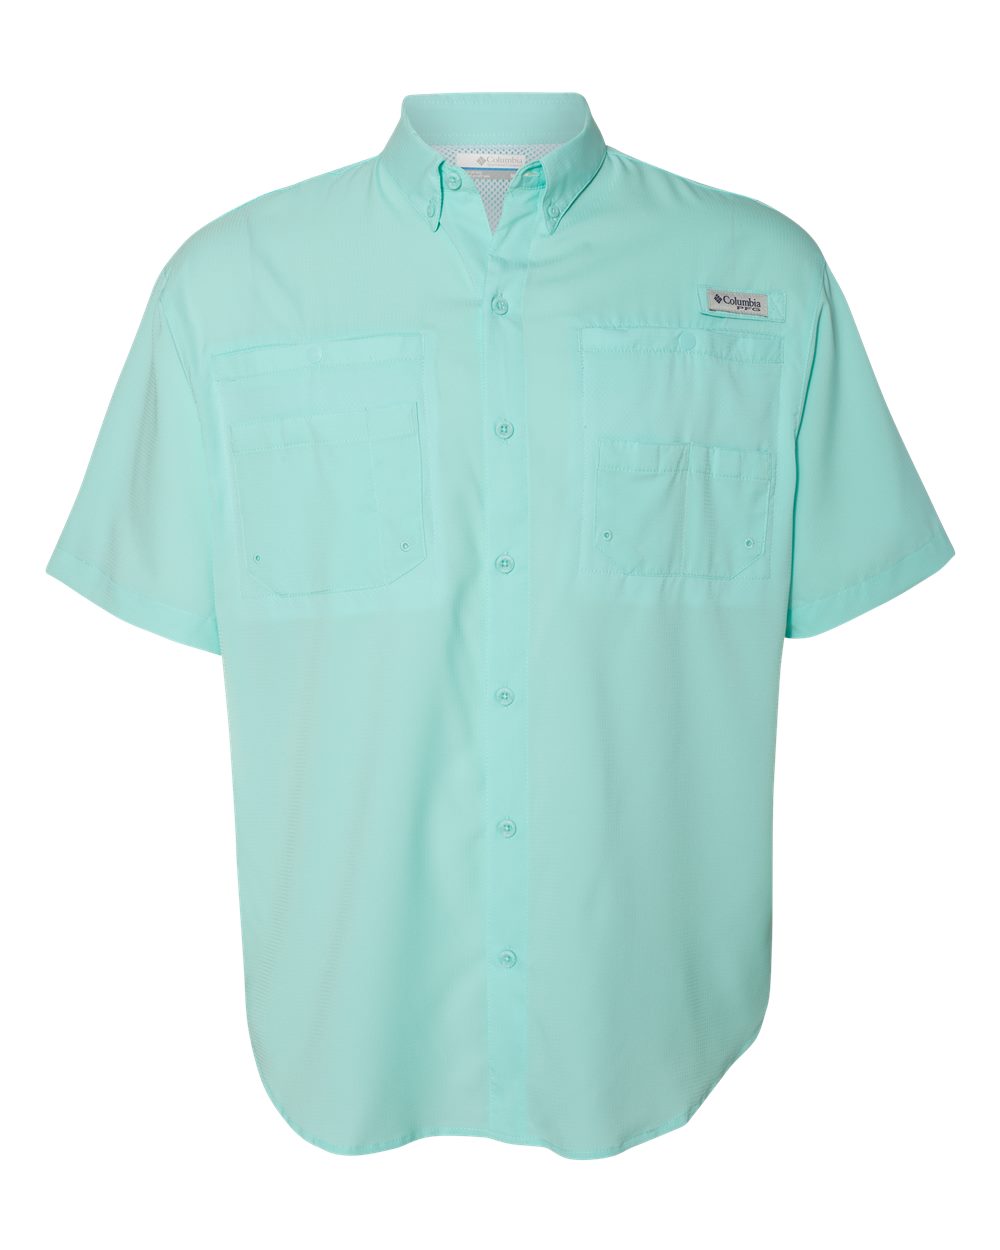 Columbia 128705 - PFG Tamiami™ II Short Sleeve Shirt